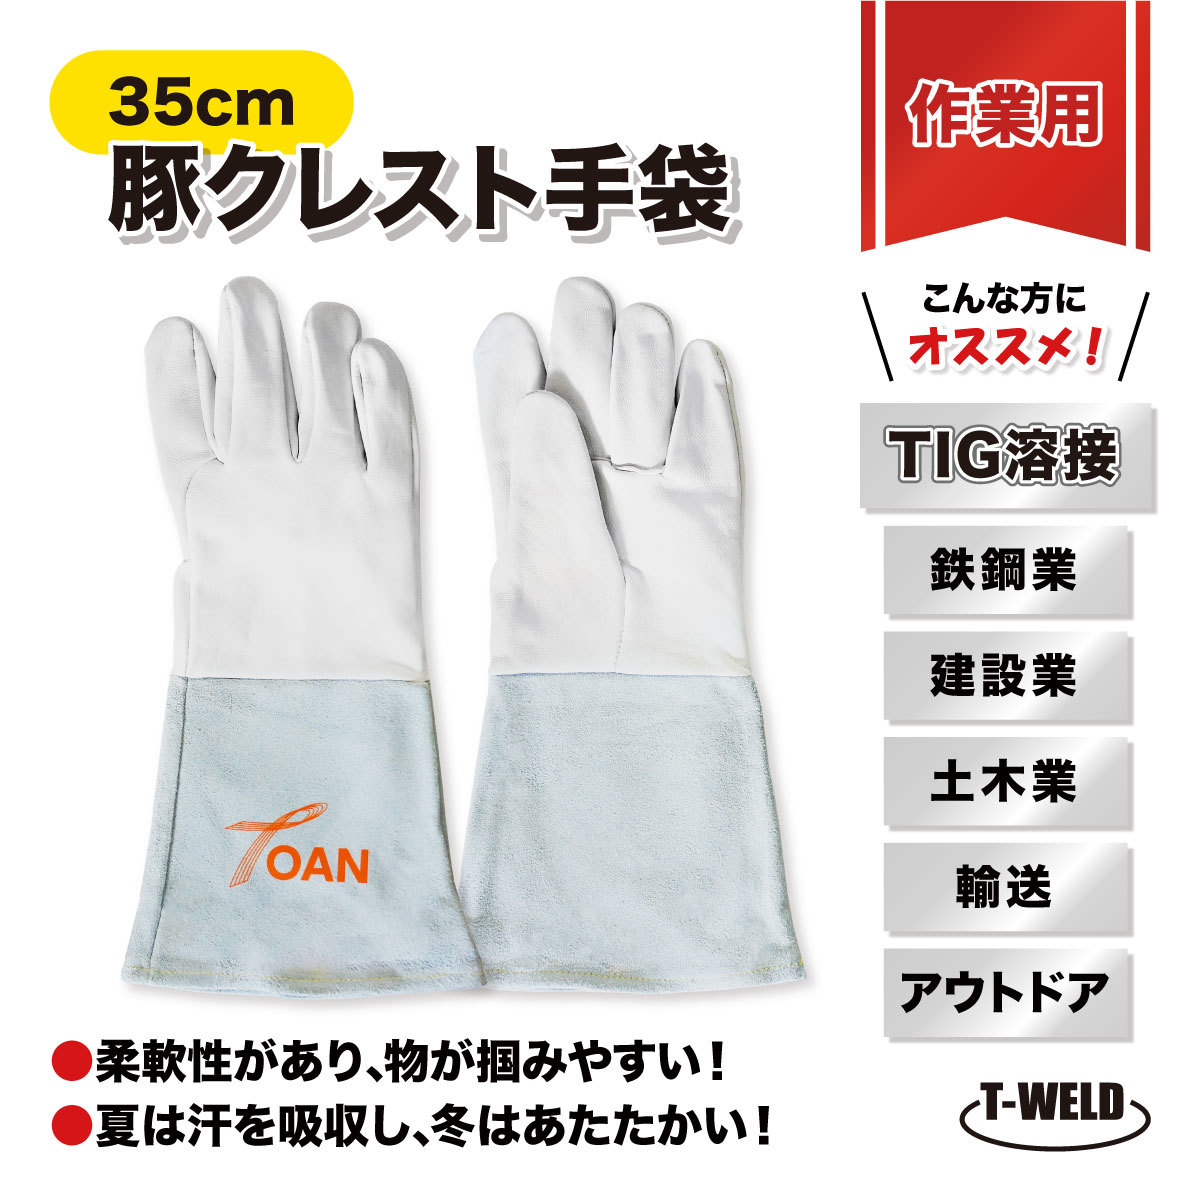 TIG 溶接 鉄鋼 建設 作業用 豚クレスト 牛革 ミックスタイプ 手袋 5本指 長さ L:35cm 10双セット